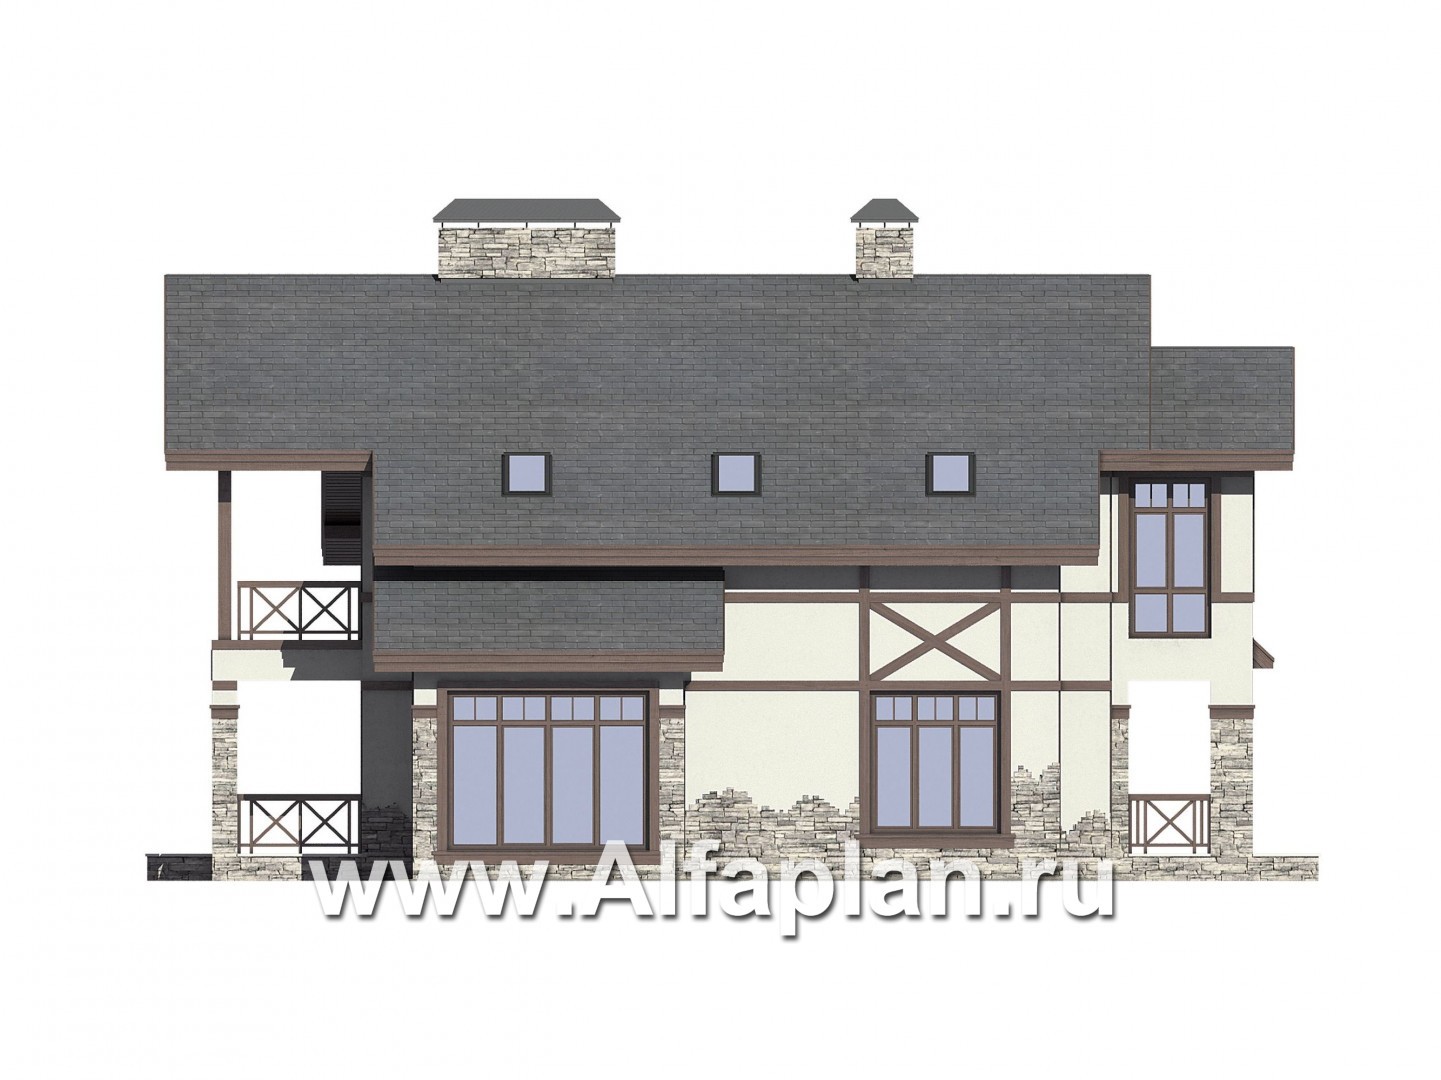 Проект дома с мансардой, планировка с террасой и кабинетом на 1 эт, с сауной, в стиле фахверк - фасад дома